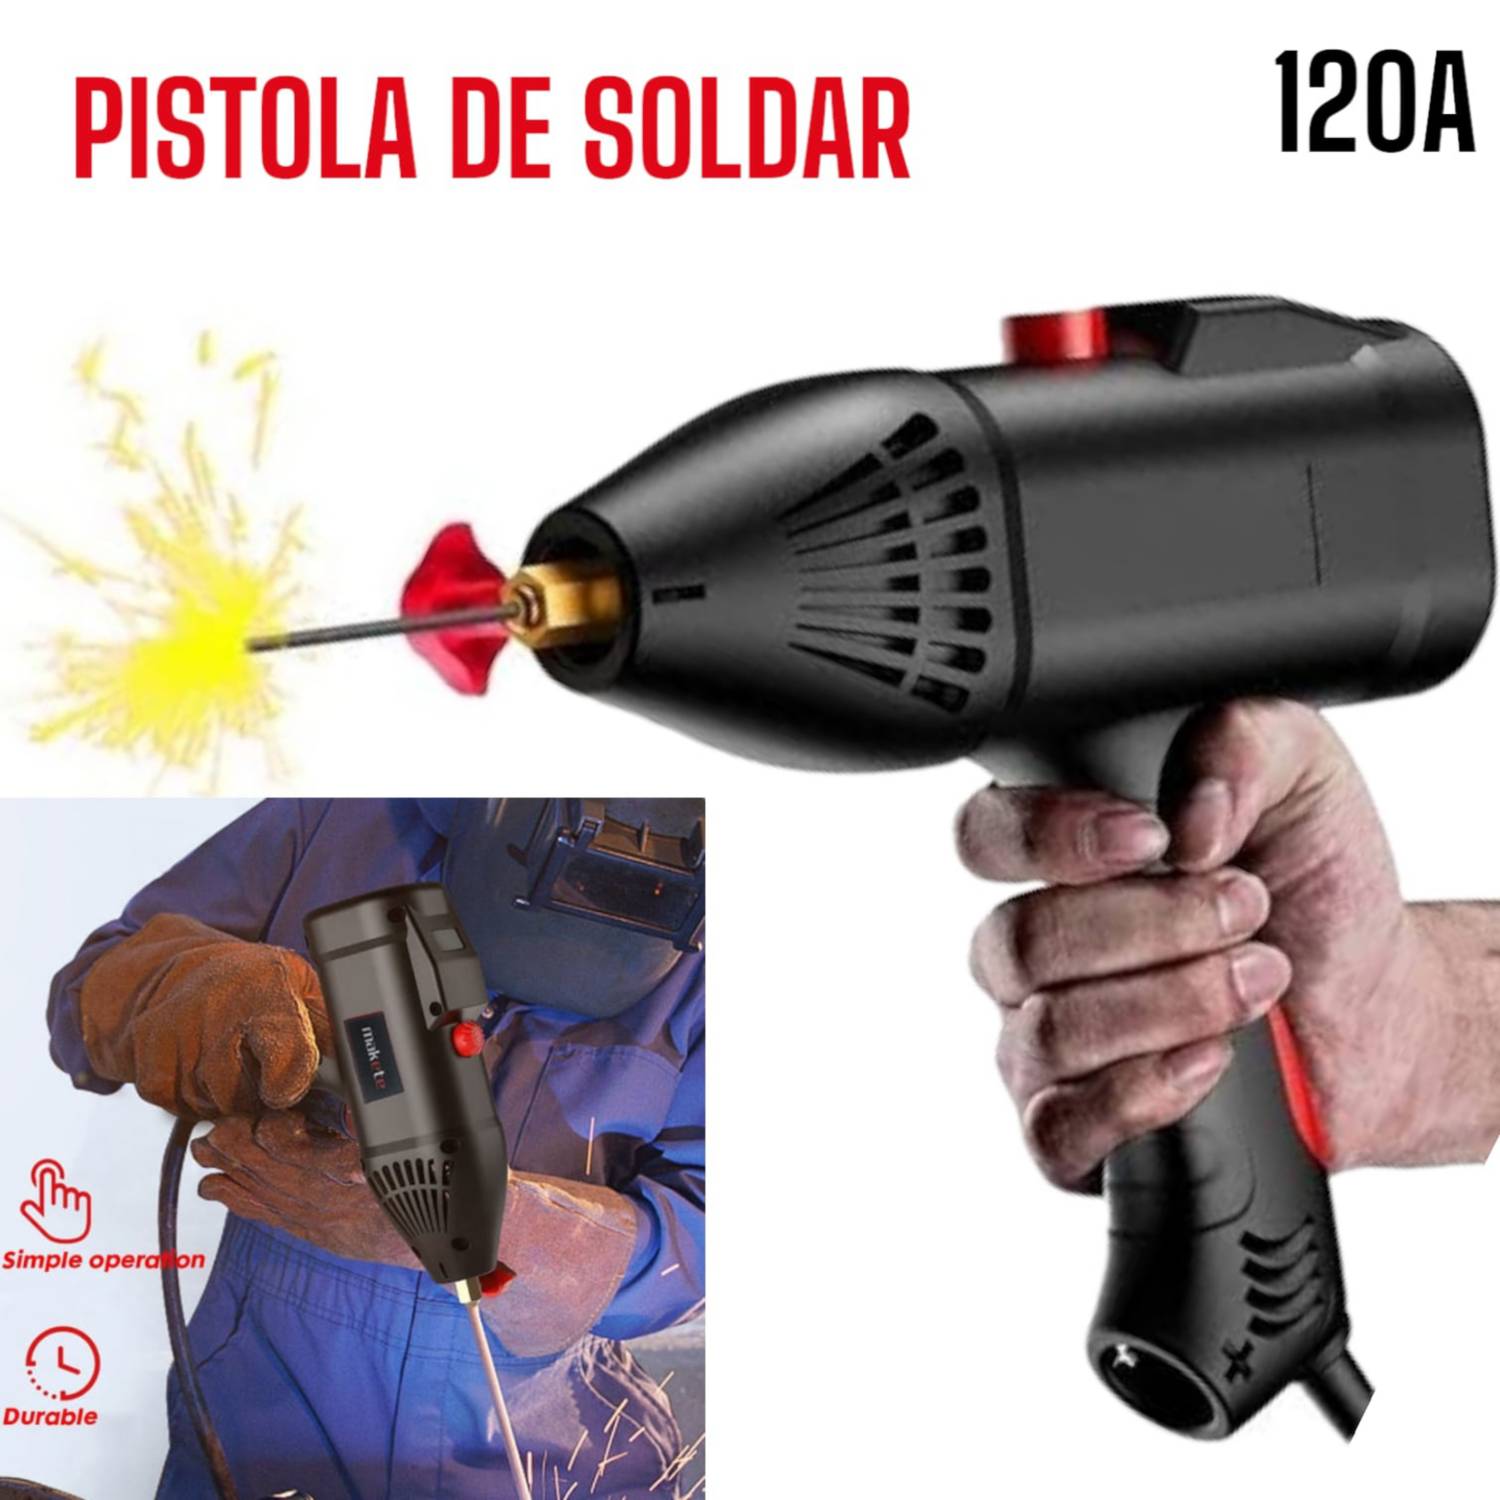 Pistola de Soldar Energy 3000w